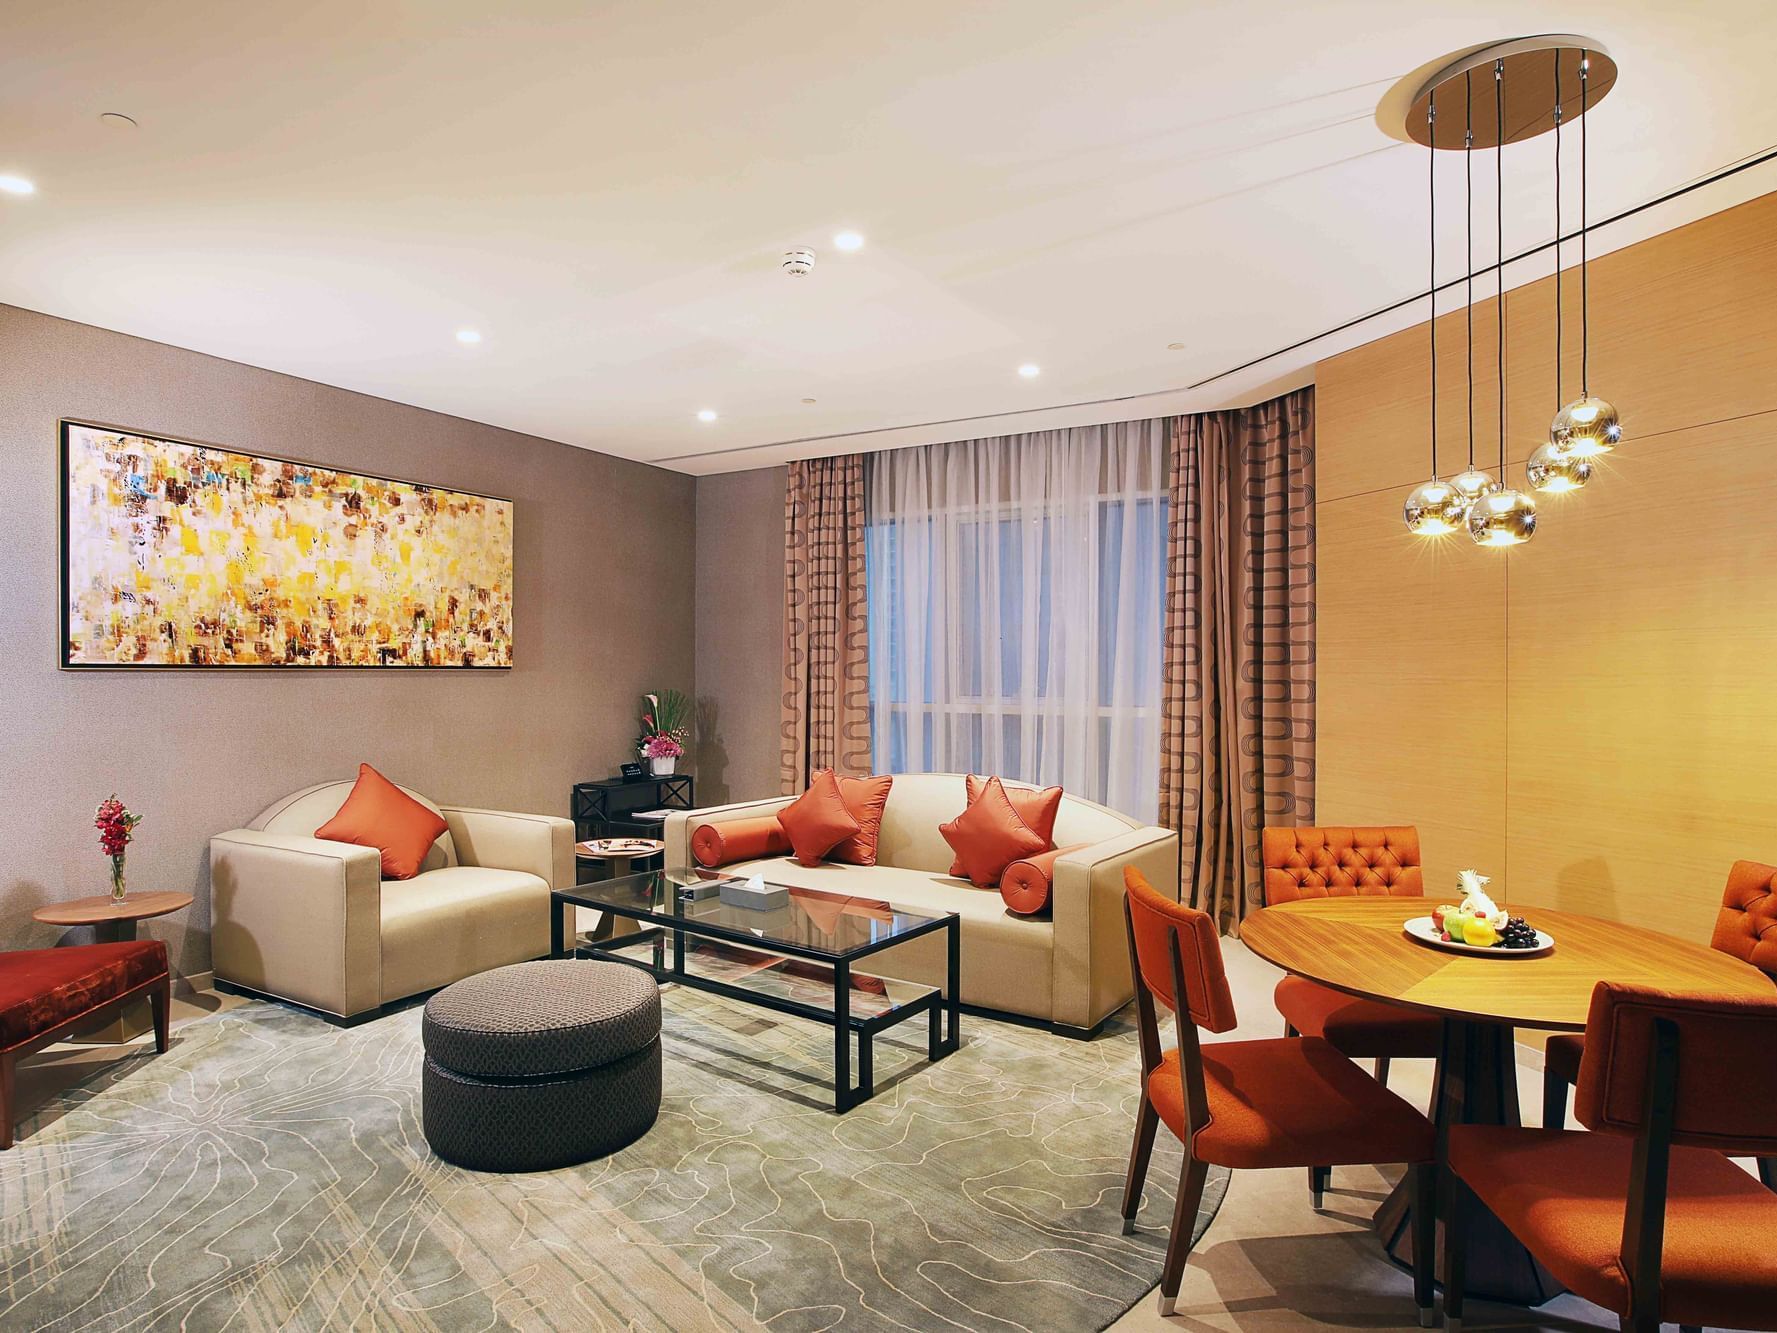 2-Bedroom Grand Suite at Grand Cosmopolitan Hotel in Dubai